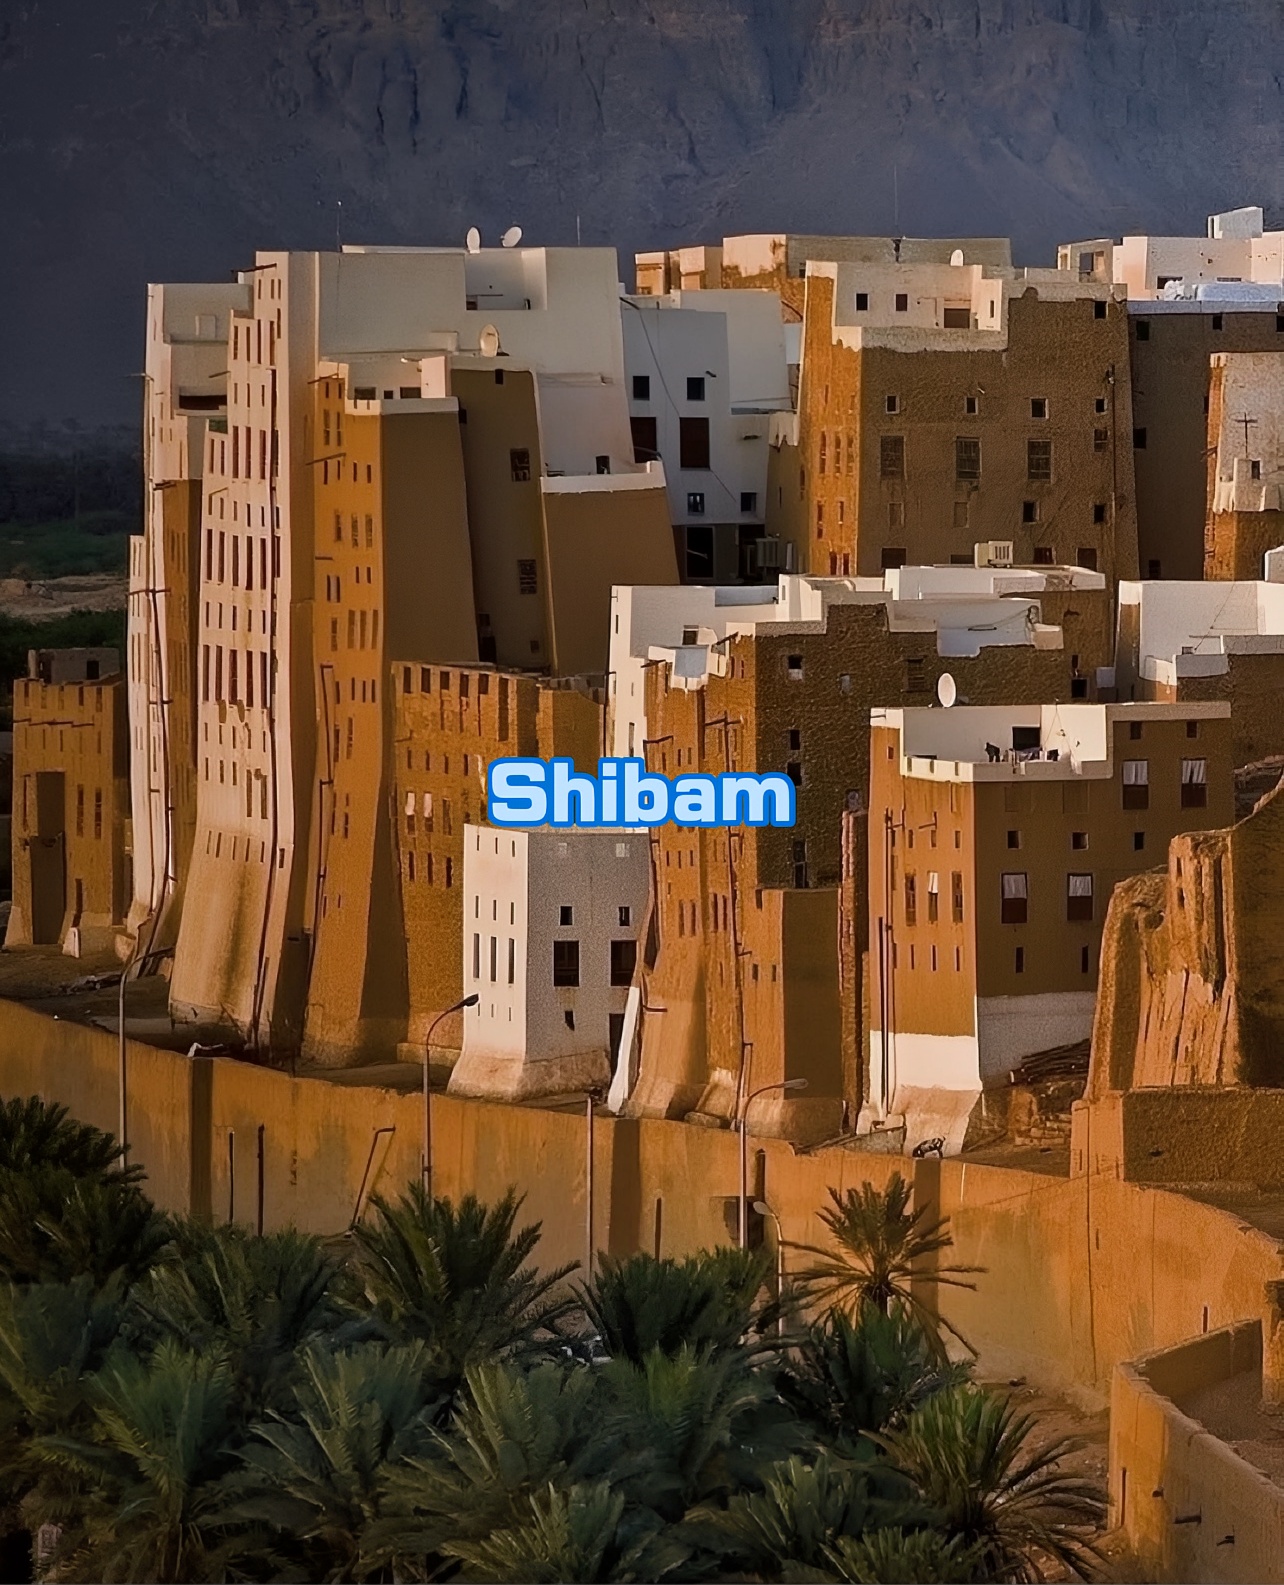 Shibam